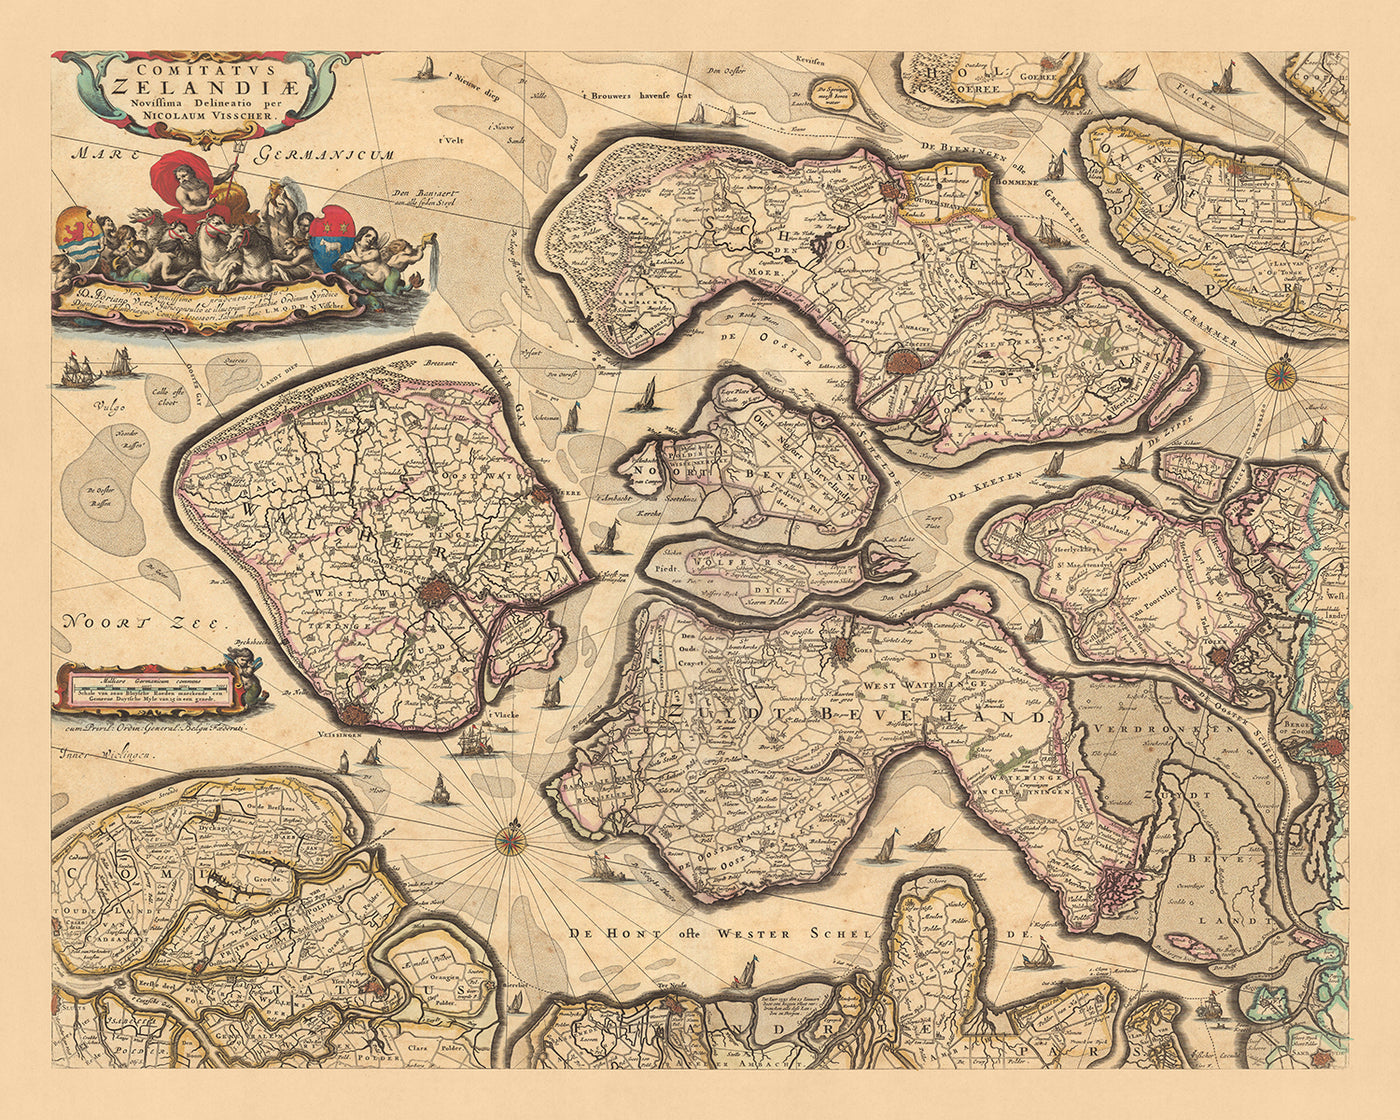 Old Map of Zeeland by Visscher, 1690: Terneuzen, Vlissingen, Bergen op Zoom, Goes, Middelburg